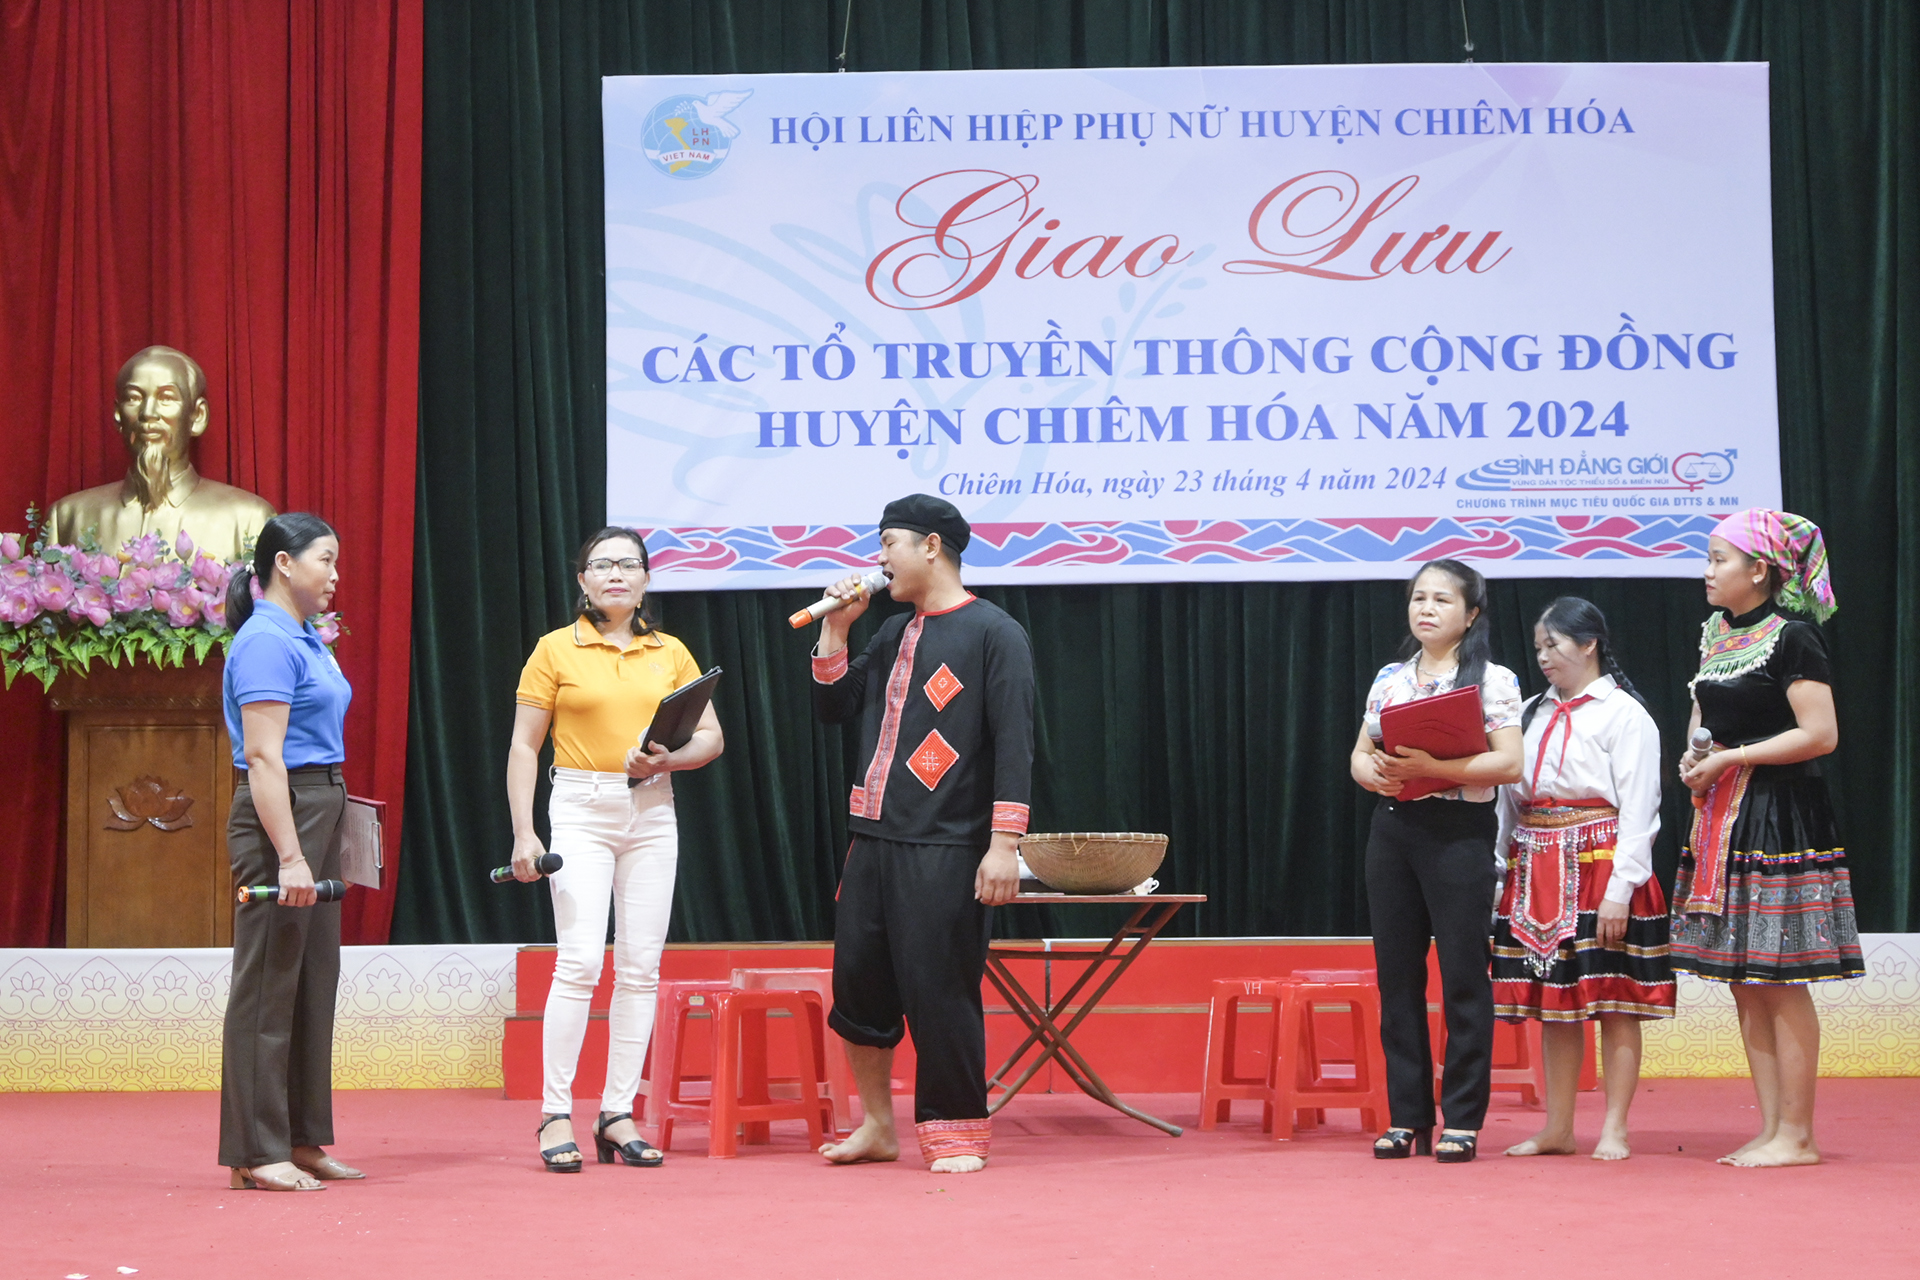 Hội LHPN huyện Chiêm Hoá  tổ chức giao lưu các tổ truyền thông cộng đồng huyện Chiêm Hoá năm 2024